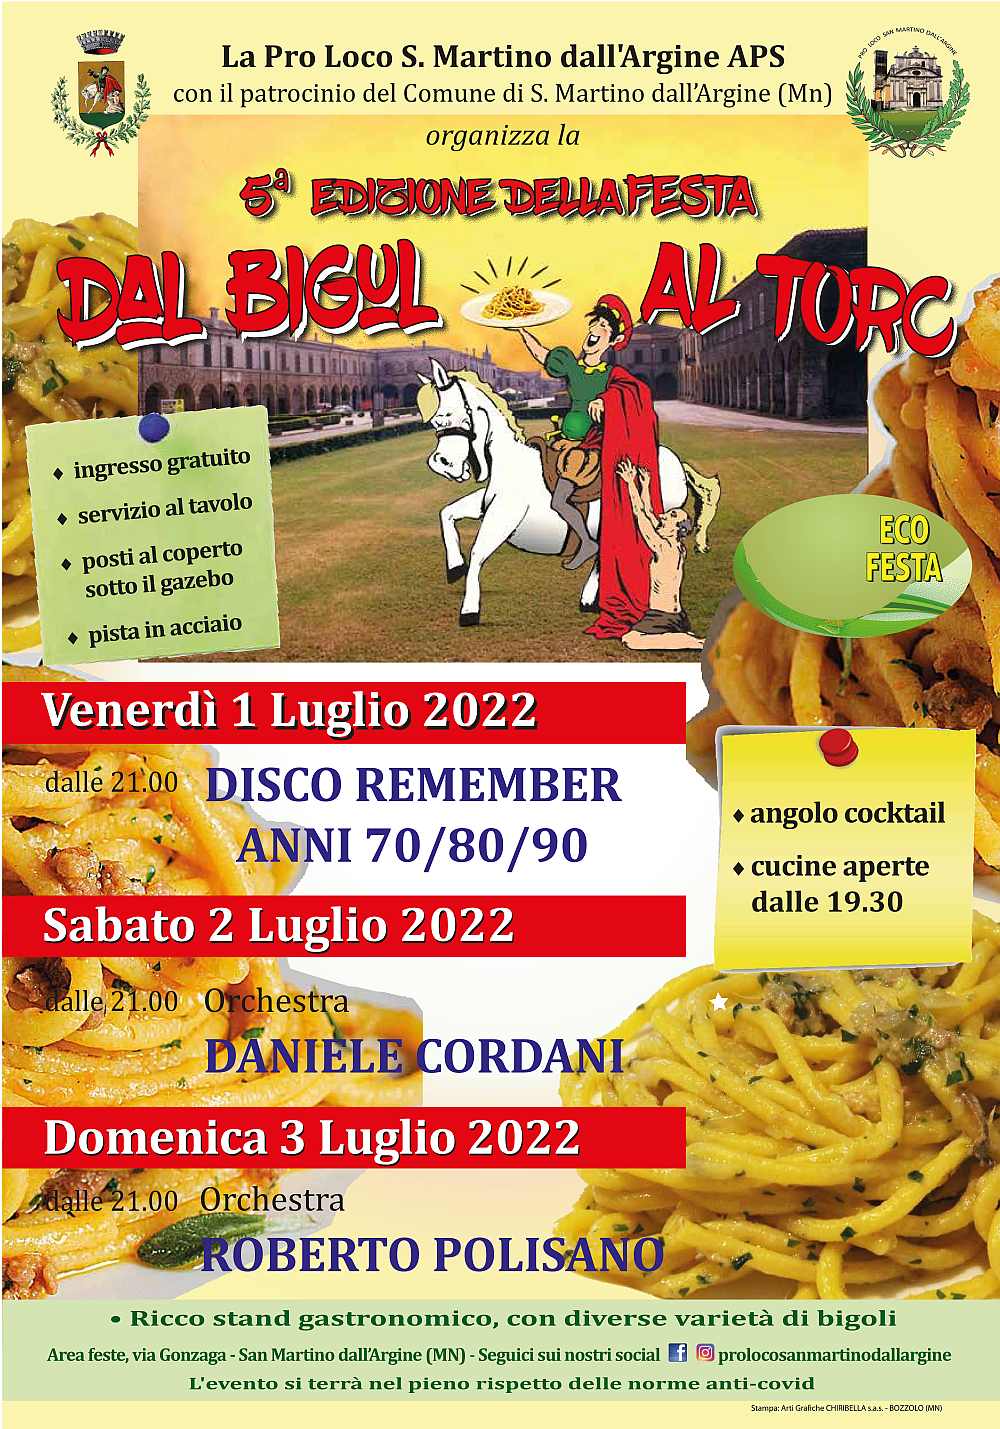 San Martino dall'Argine (MN)
"5^ Festa dal Bigul al Torc"
1-2-3 Luglio 2022